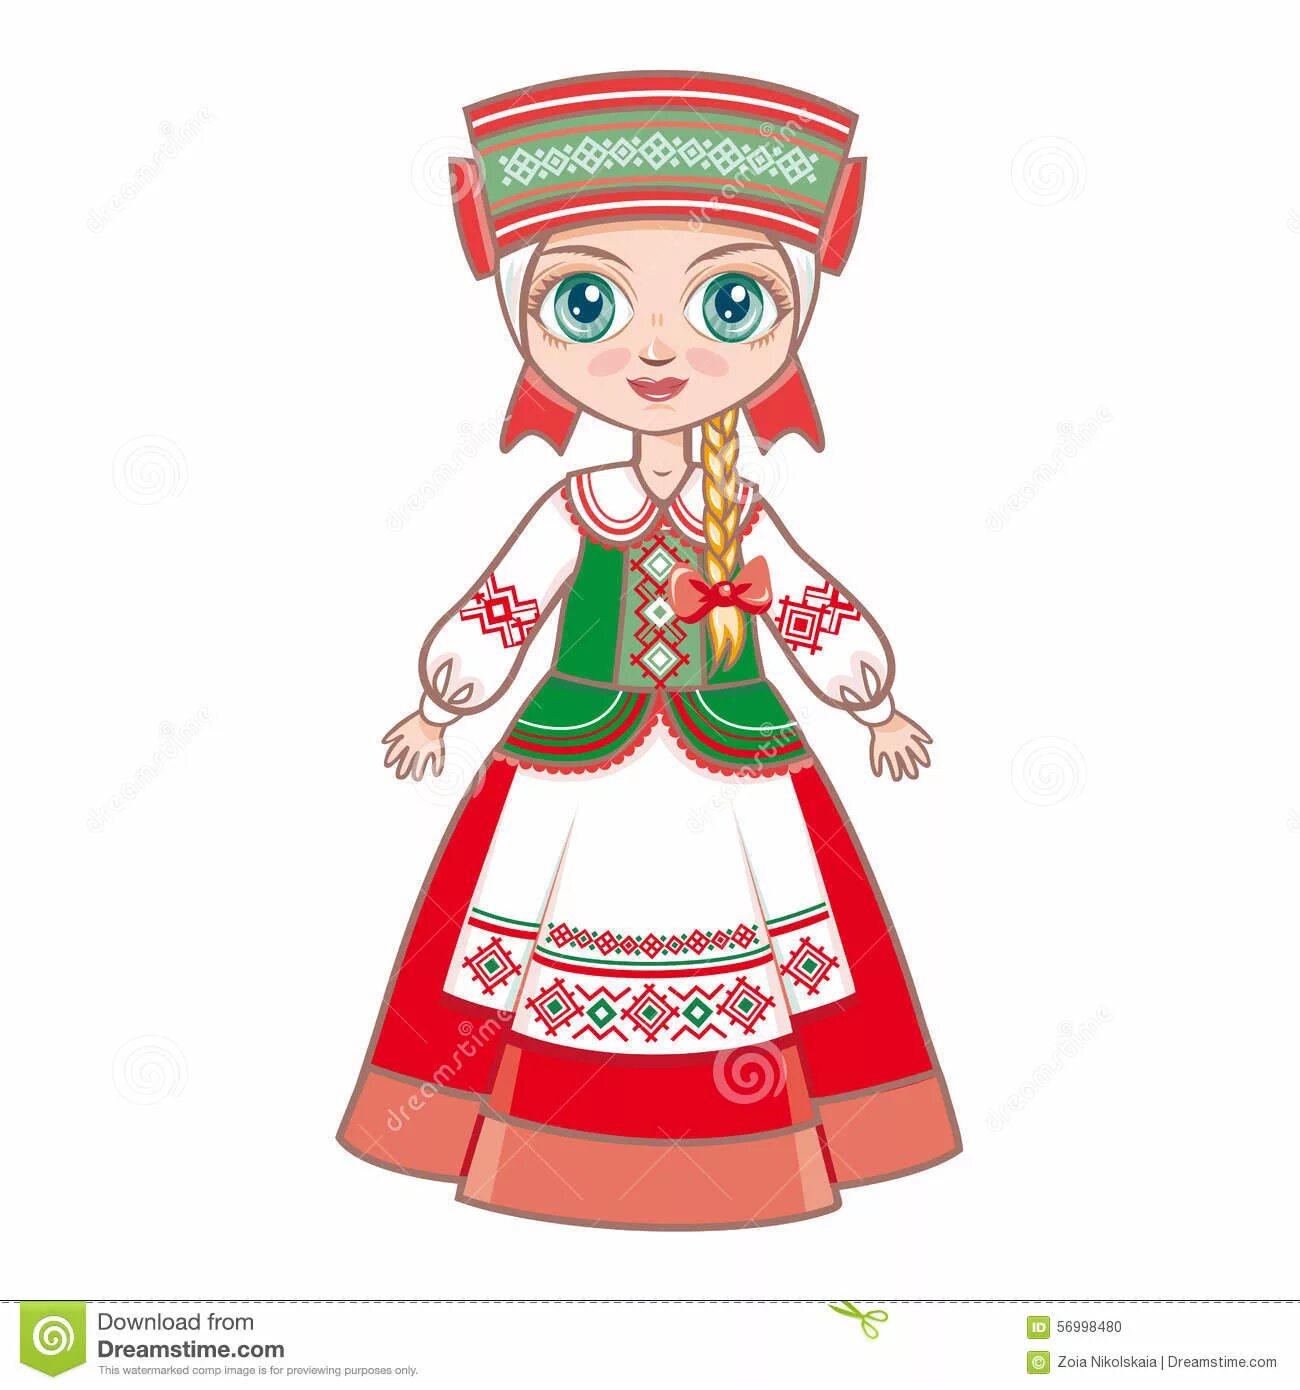 Belarusian doll #3